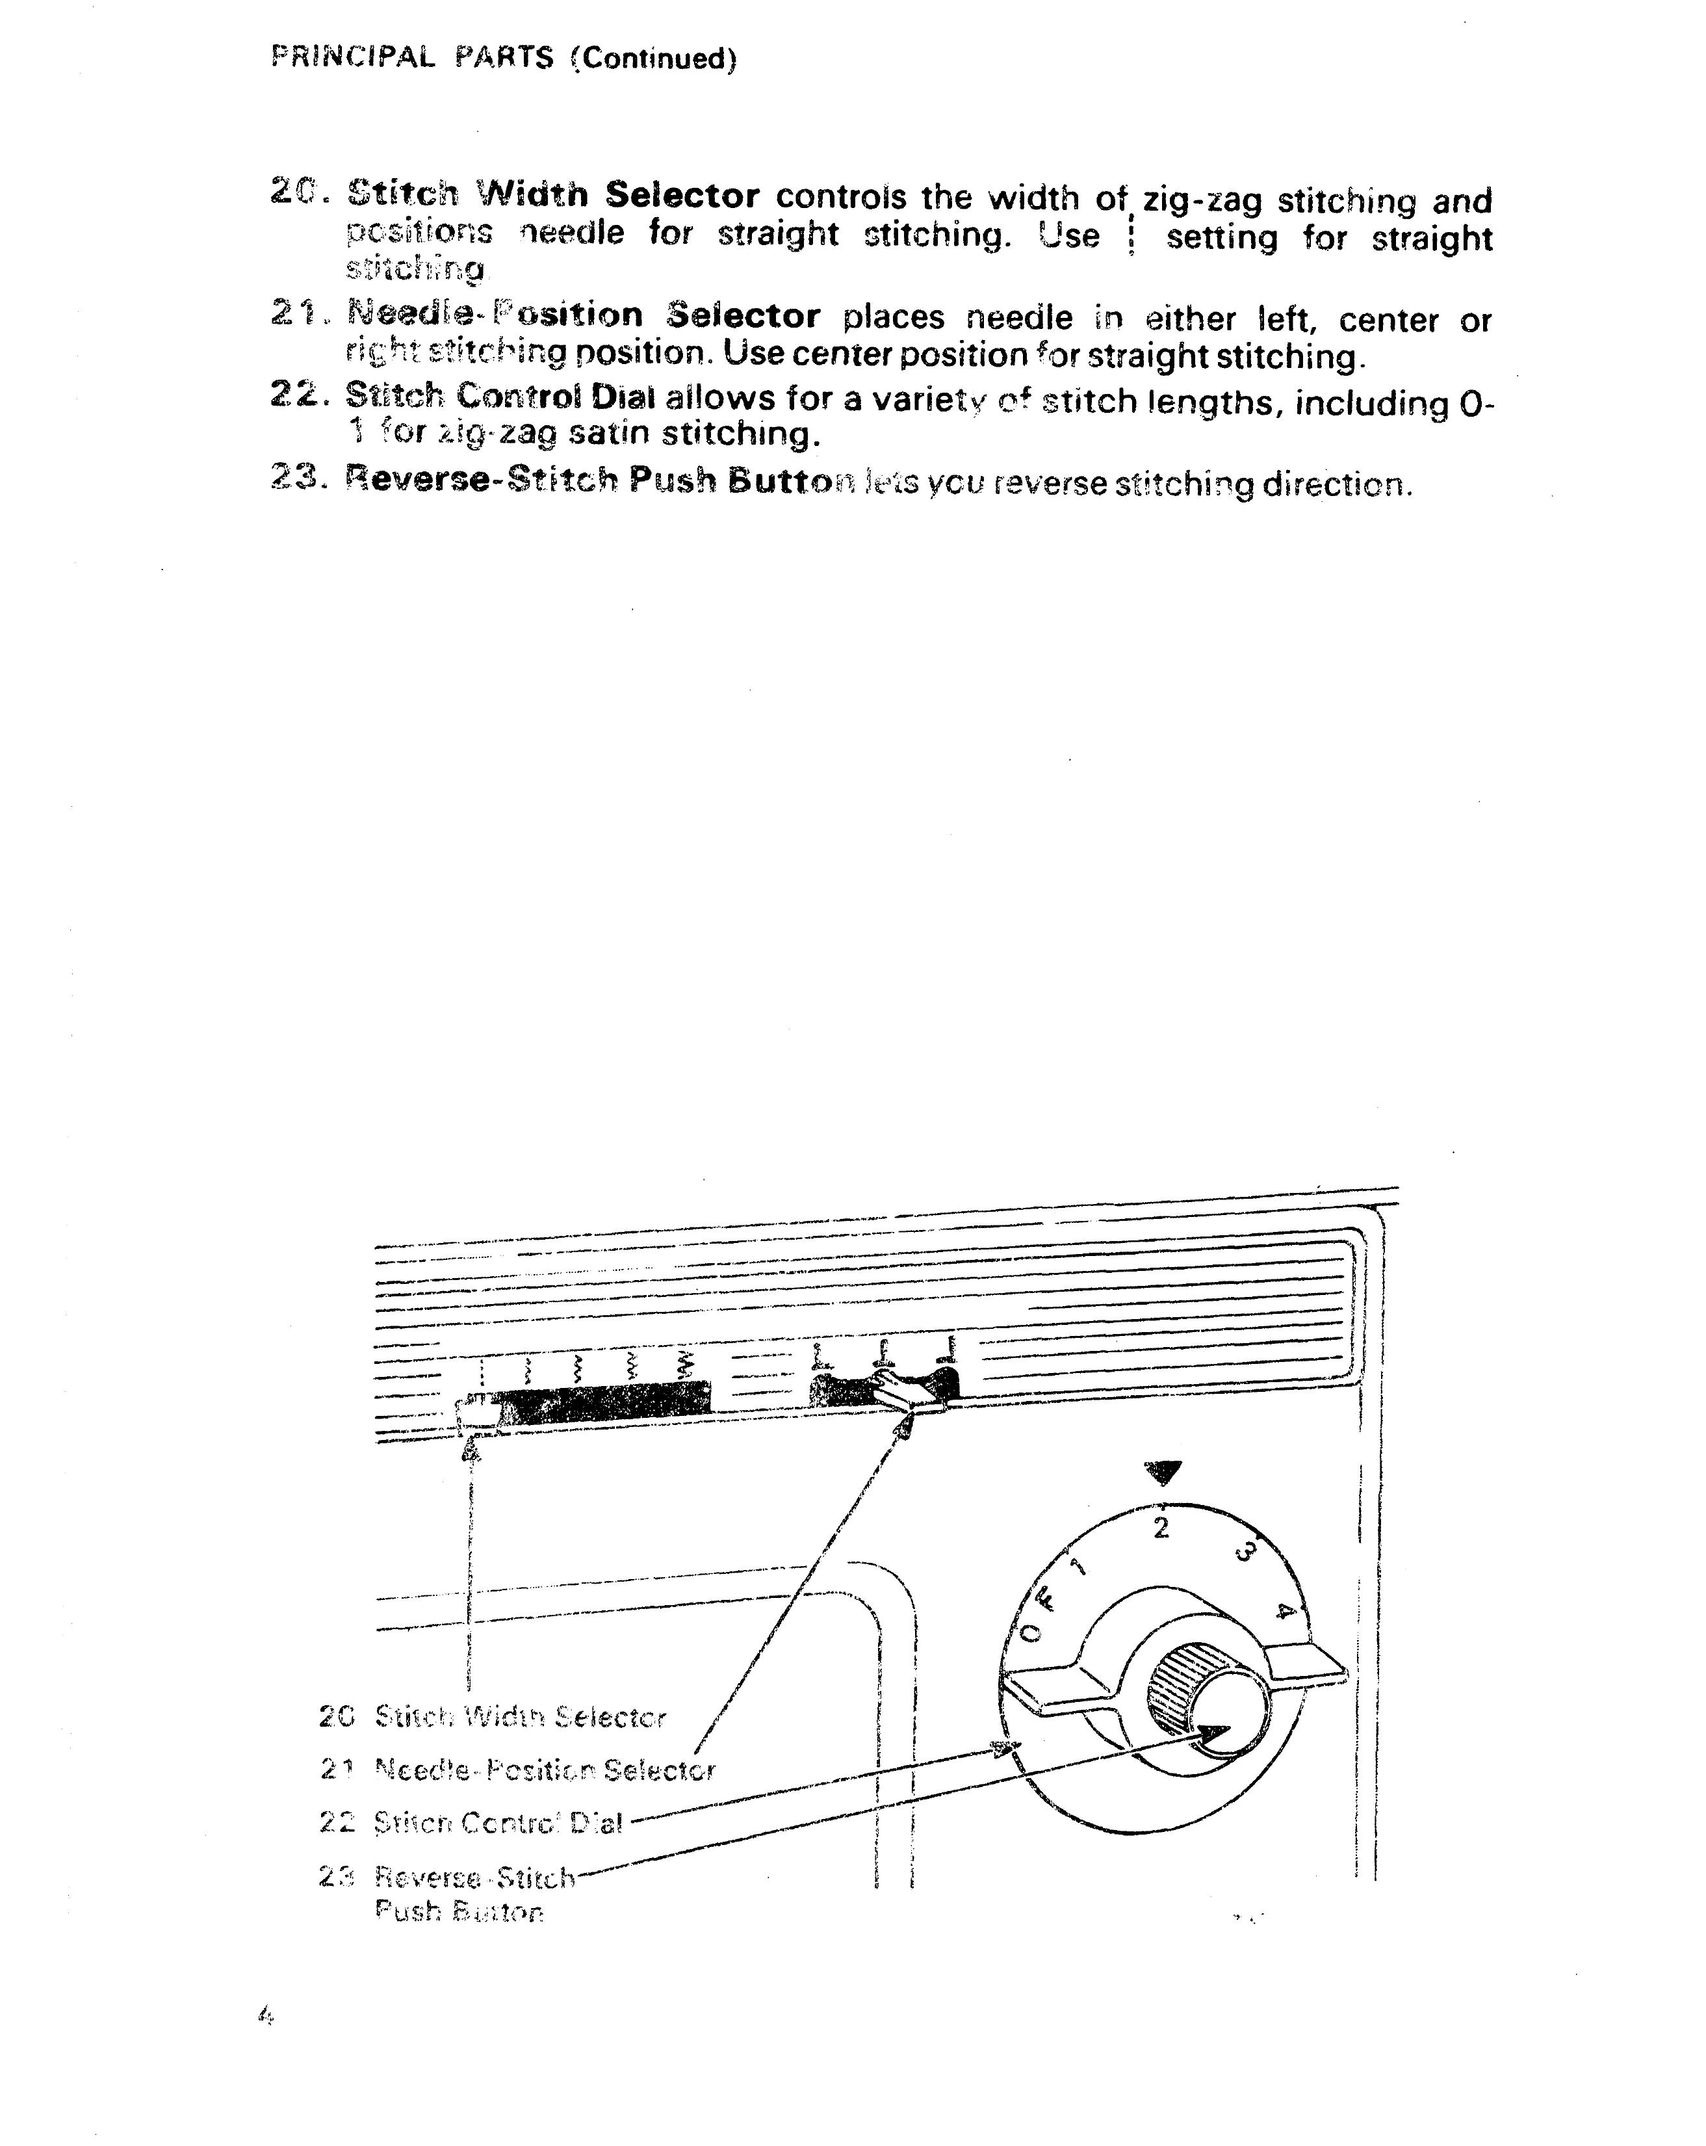 Singer 1021 Sewing Machine User Manual (Page 8)